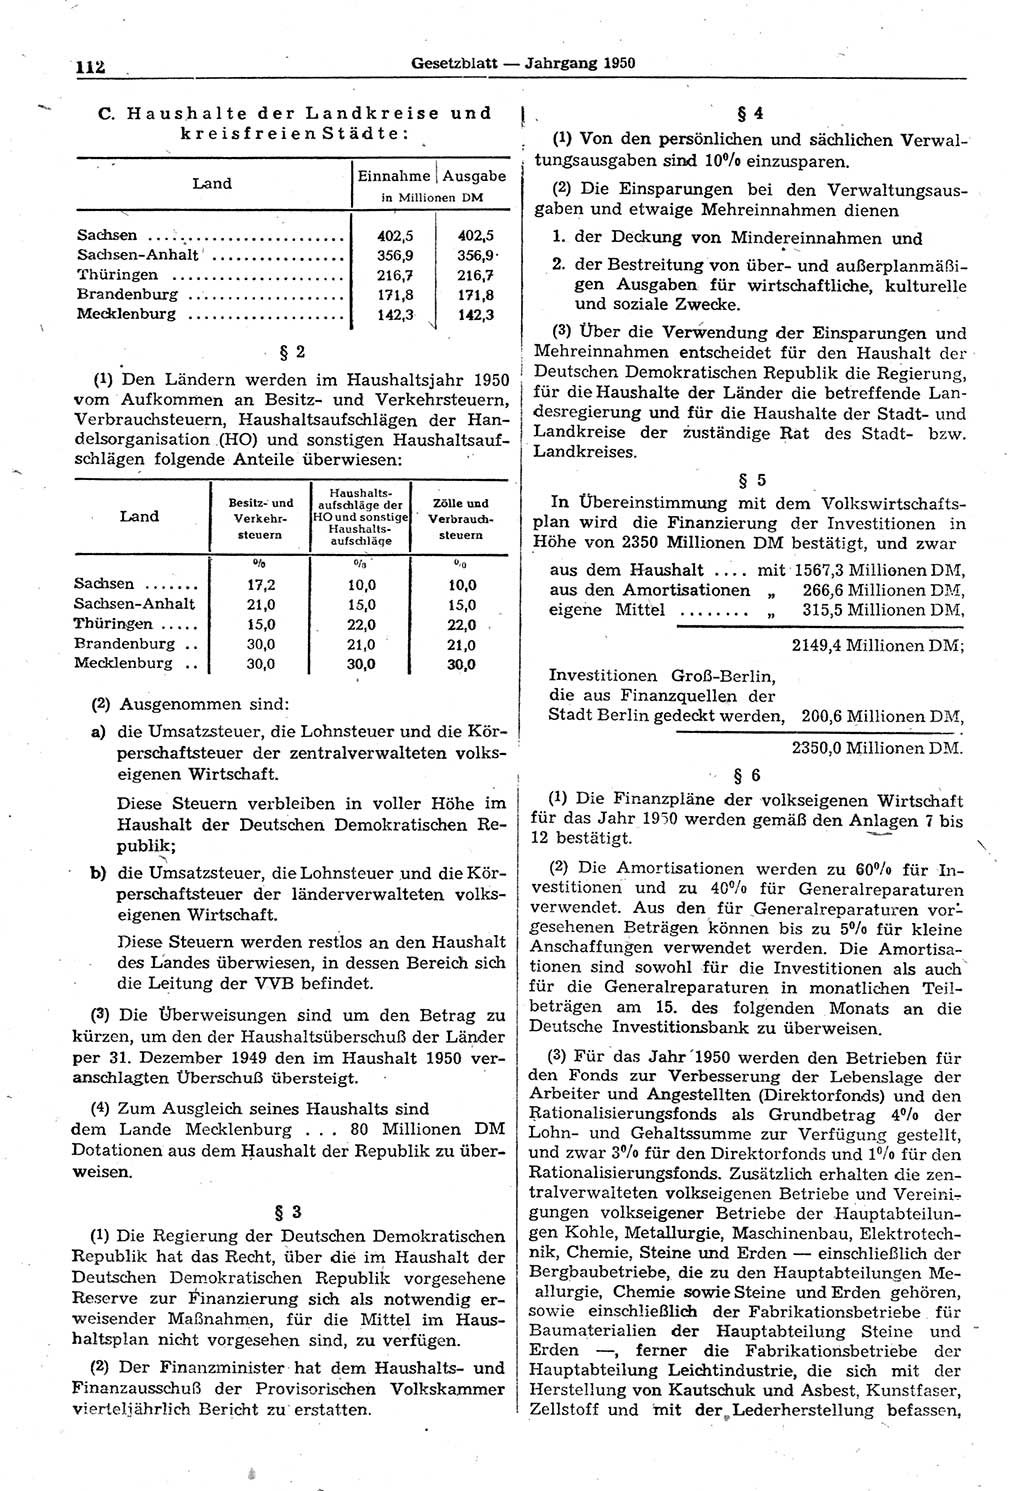 Gesetzblatt (GBl.) der Deutschen Demokratischen Republik (DDR) 1950, Seite 112 (GBl. DDR 1950, S. 112)